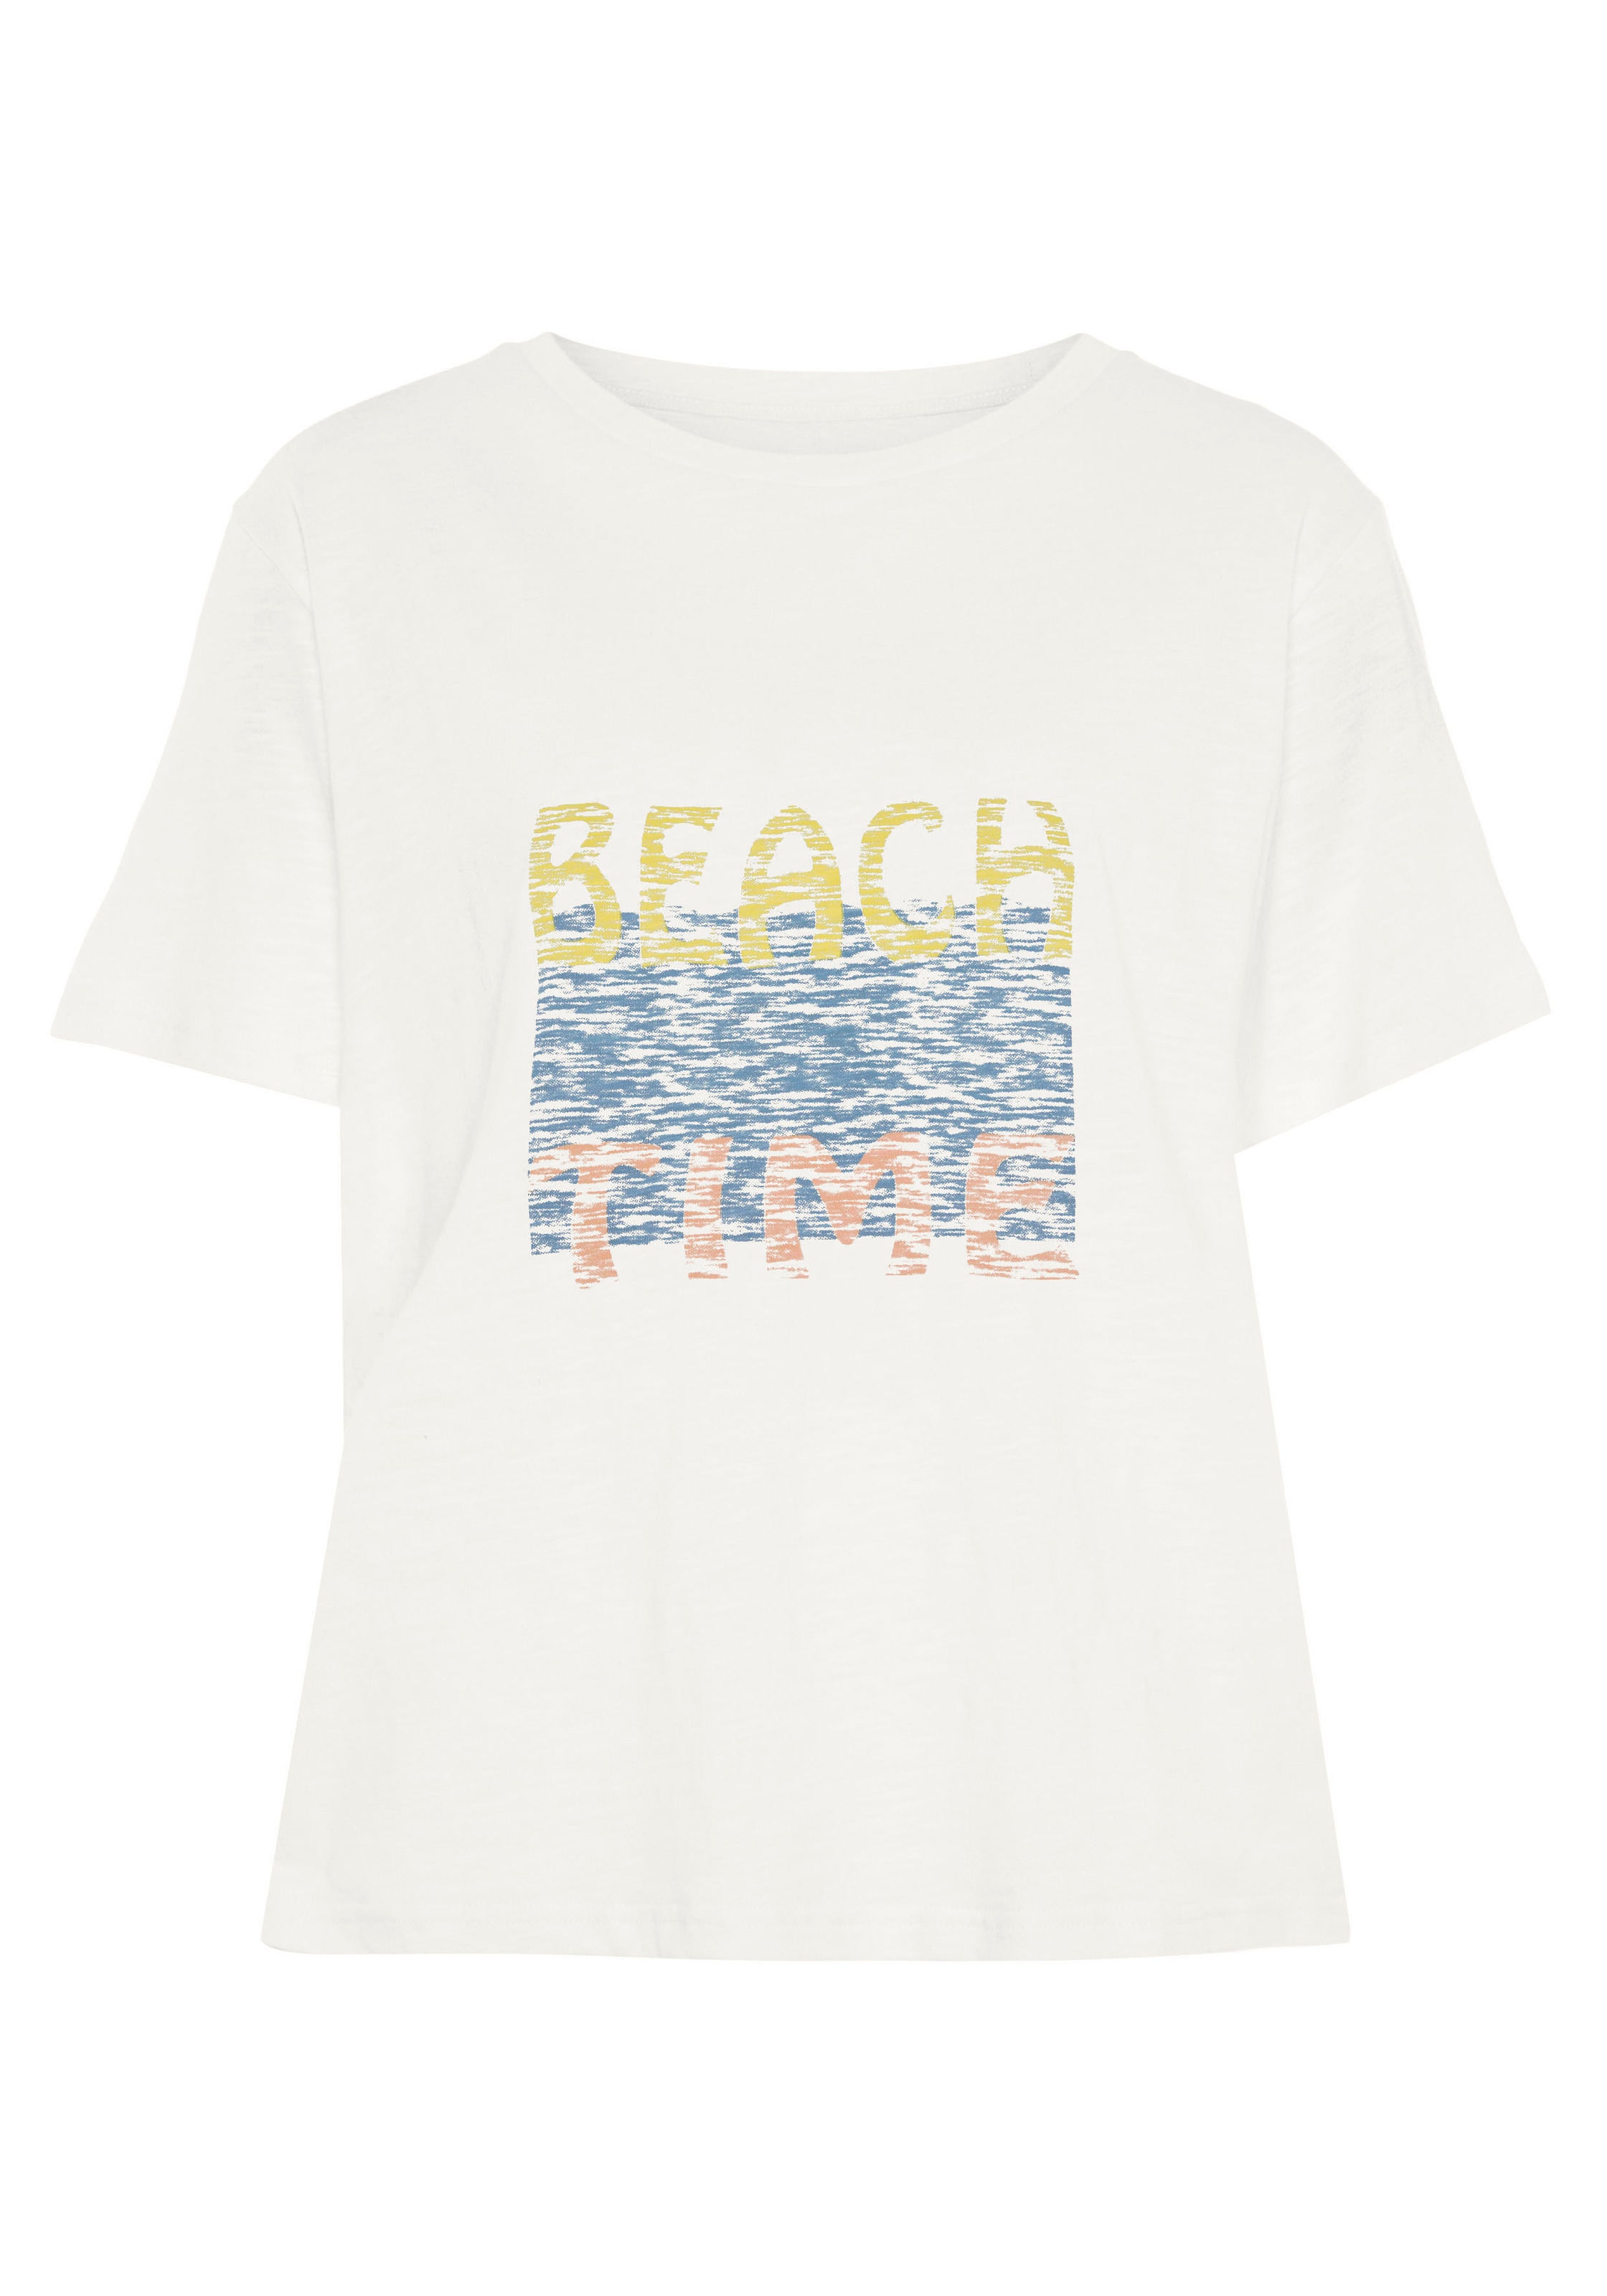 Beachtime T-Shirt, mit zwei verschiedenen Drucken